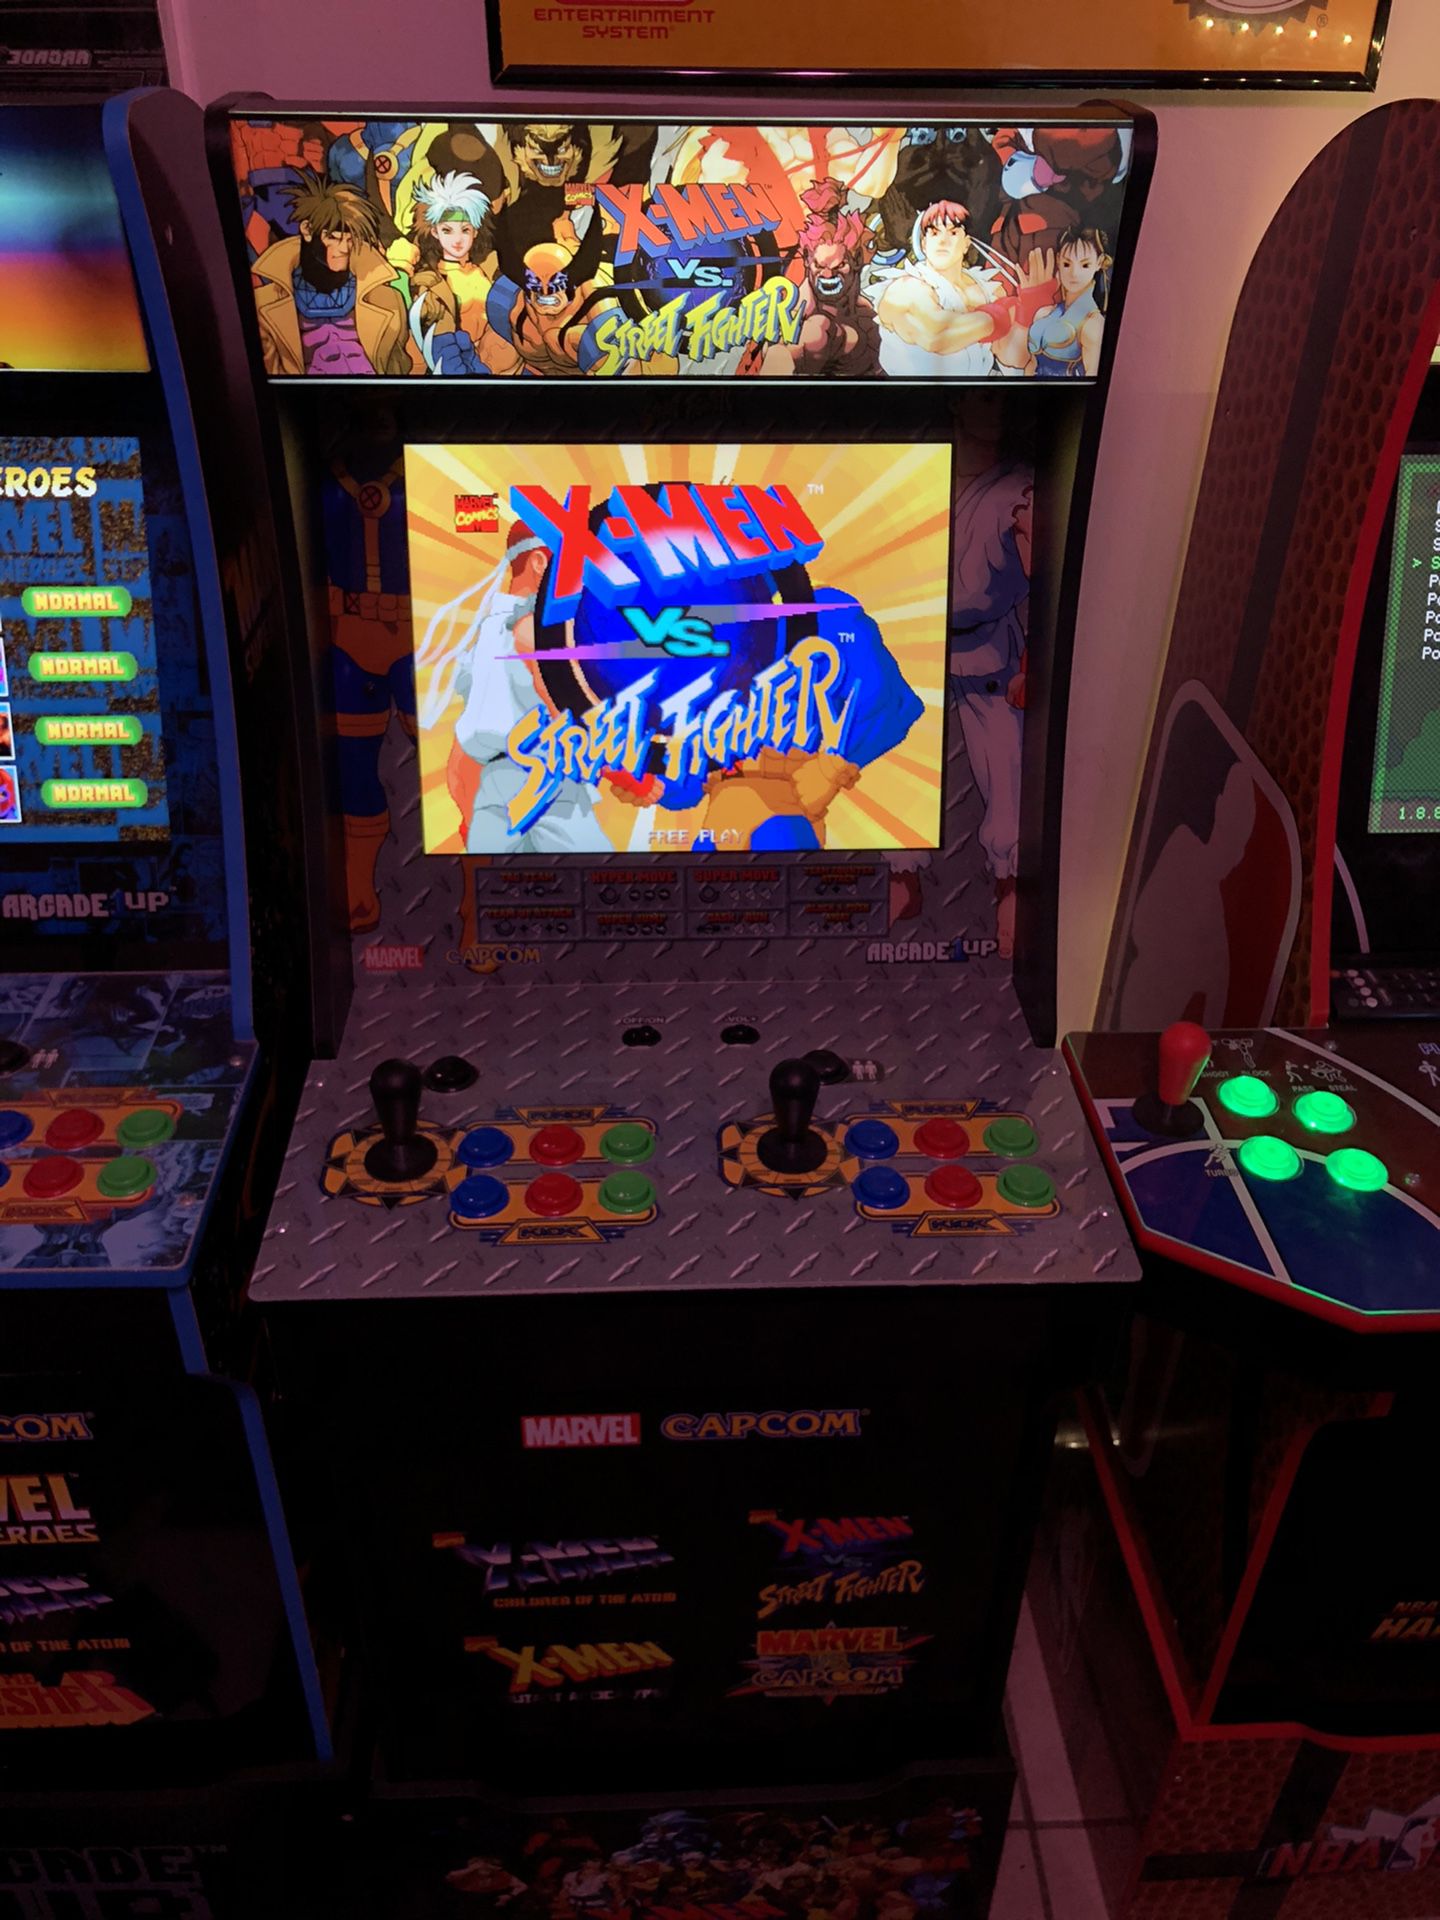 xmen vs street fighter arcade machine